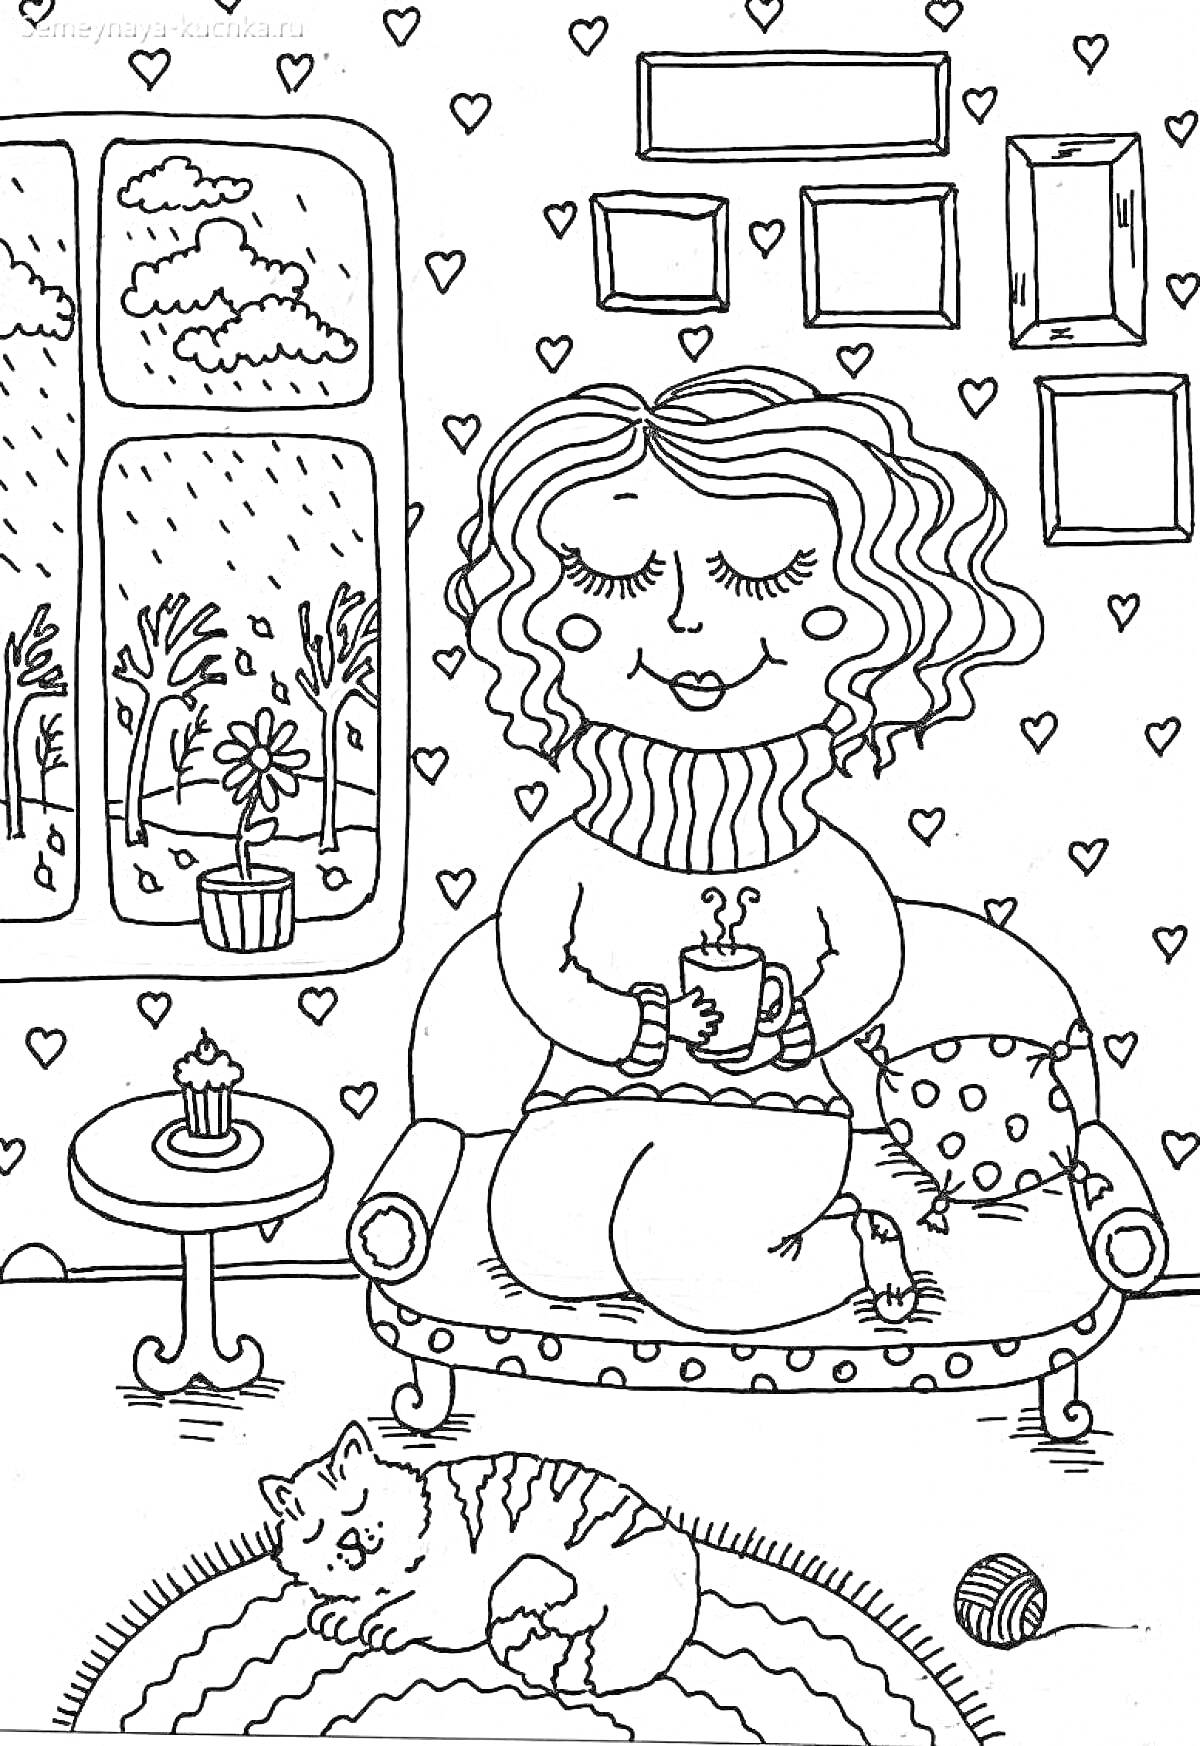 Раскраска Девушка на диване с чашкой горячего напитка, кот на коврике, столик с кексом, окно с видами на природу и цветы, рисунок с сердечками на стене и пустые рамки